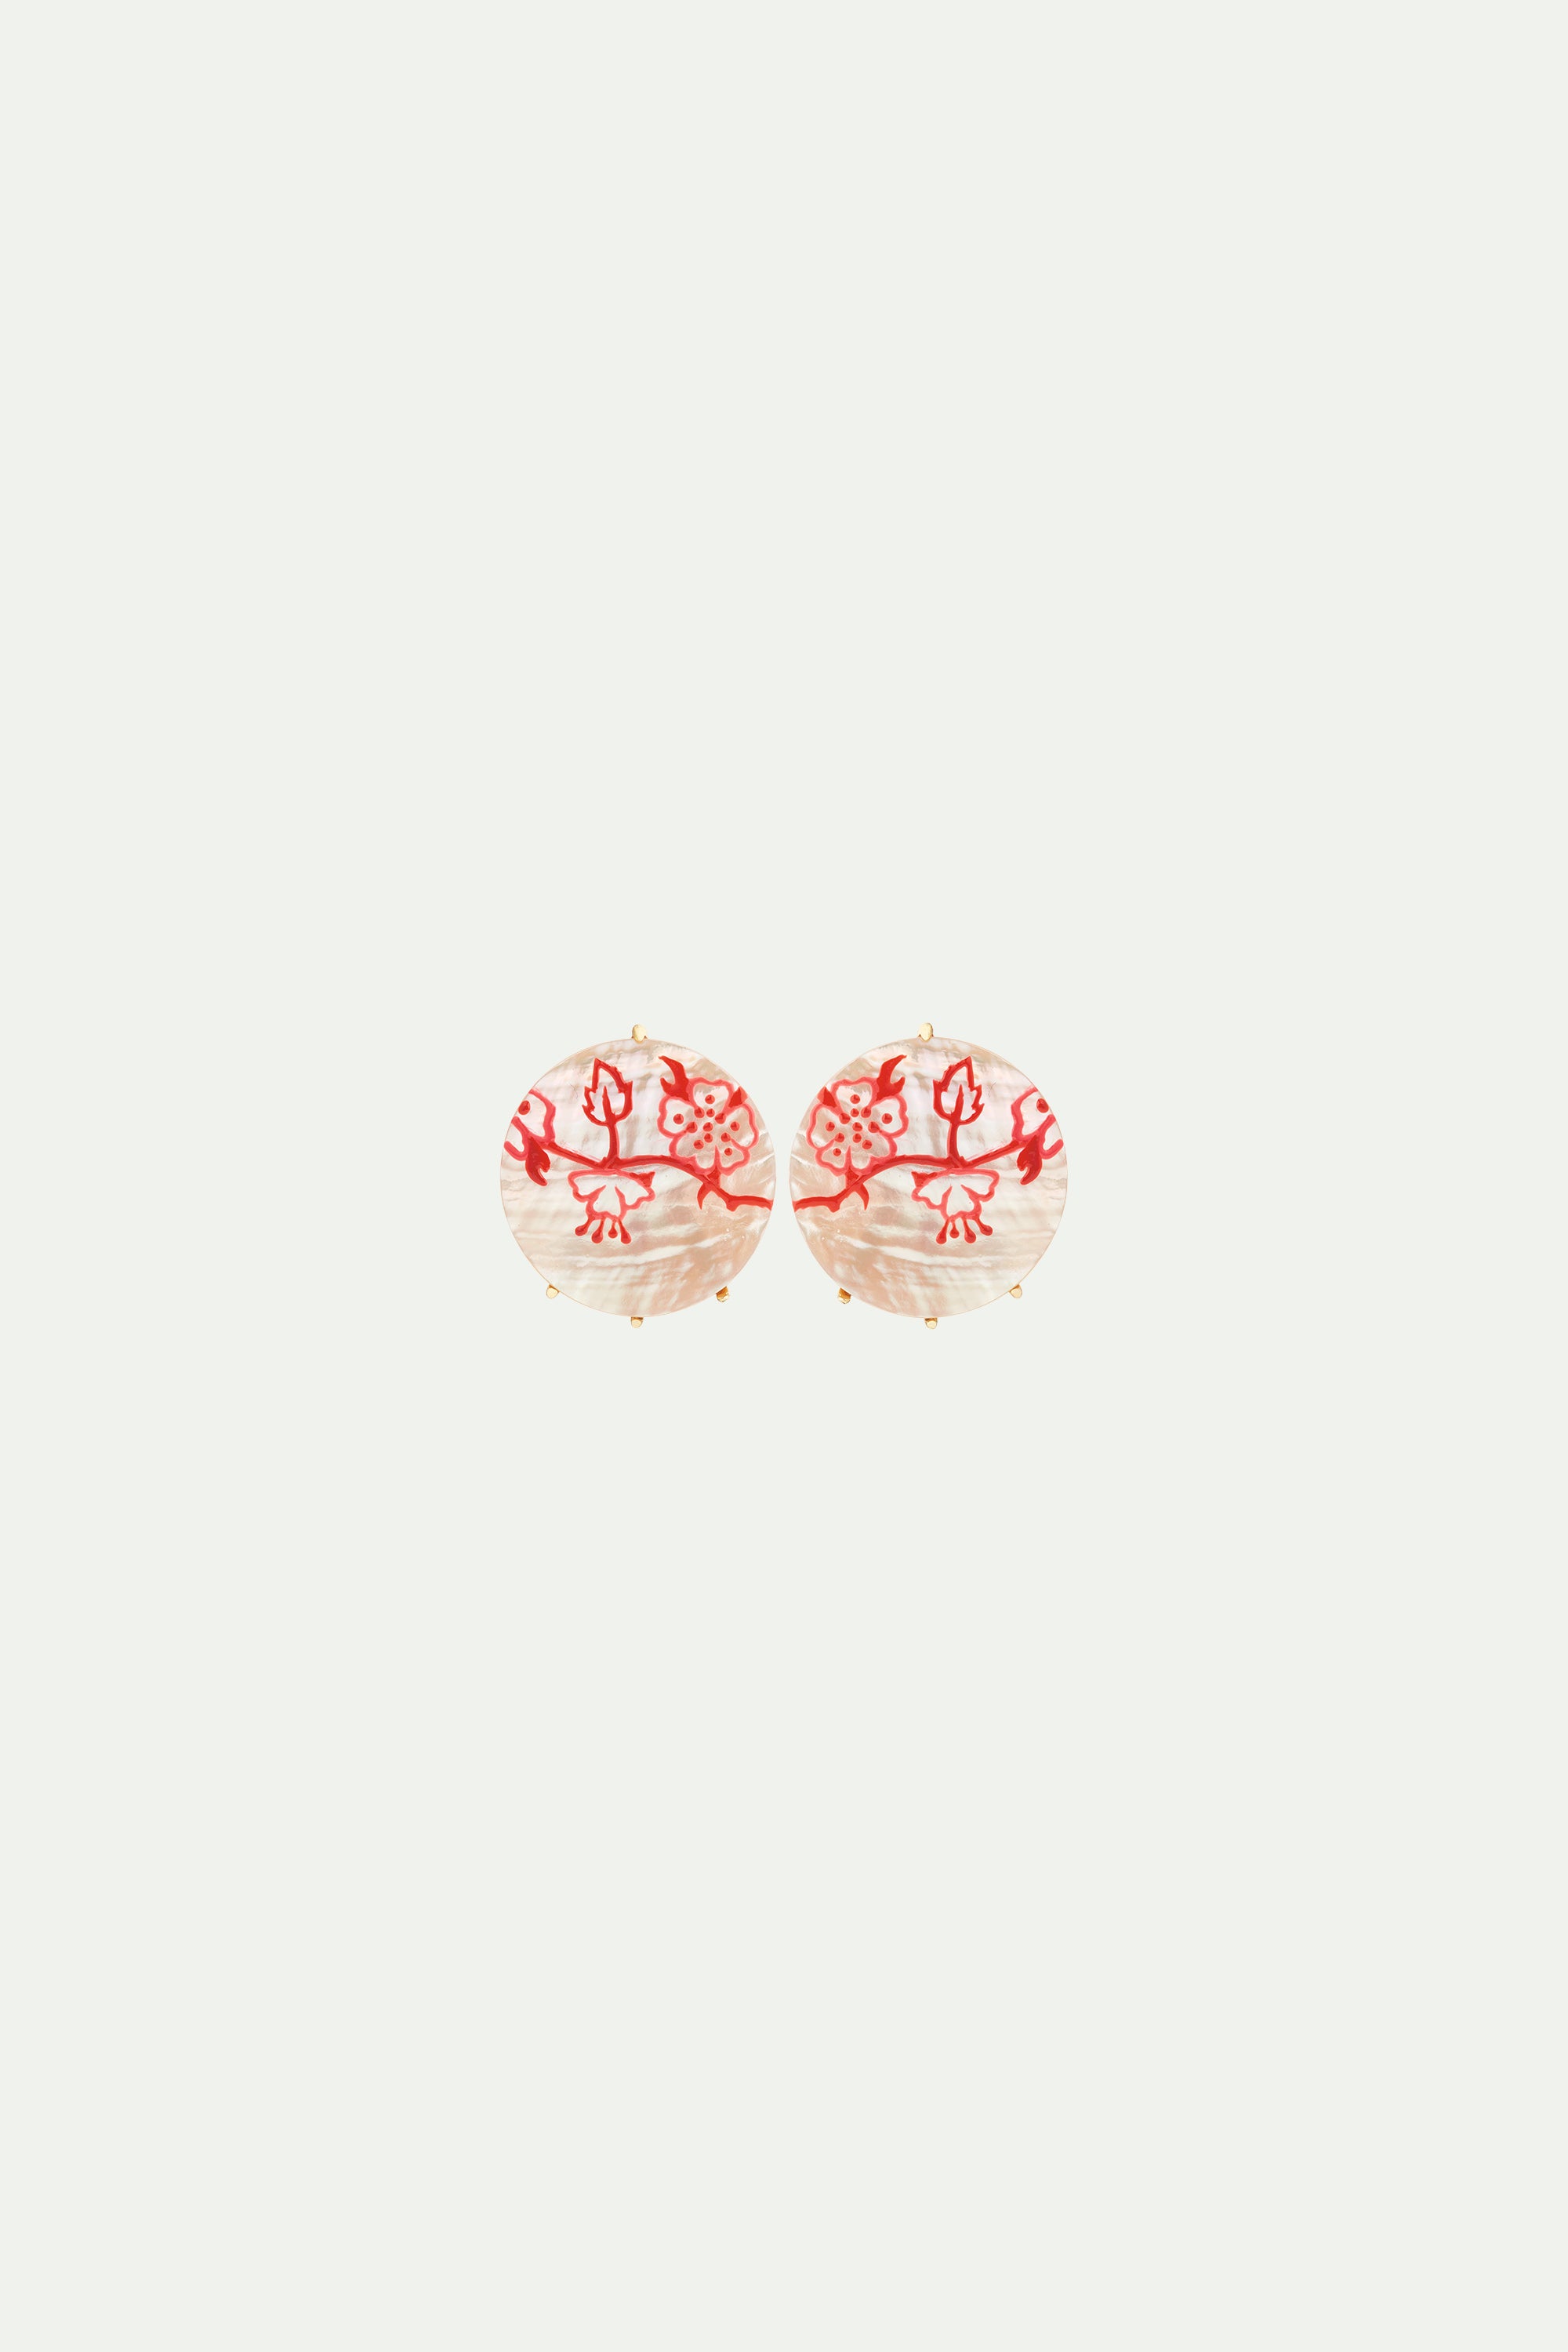 Boucles d'oreilles tiges estampe rouge de rosier sur nacre